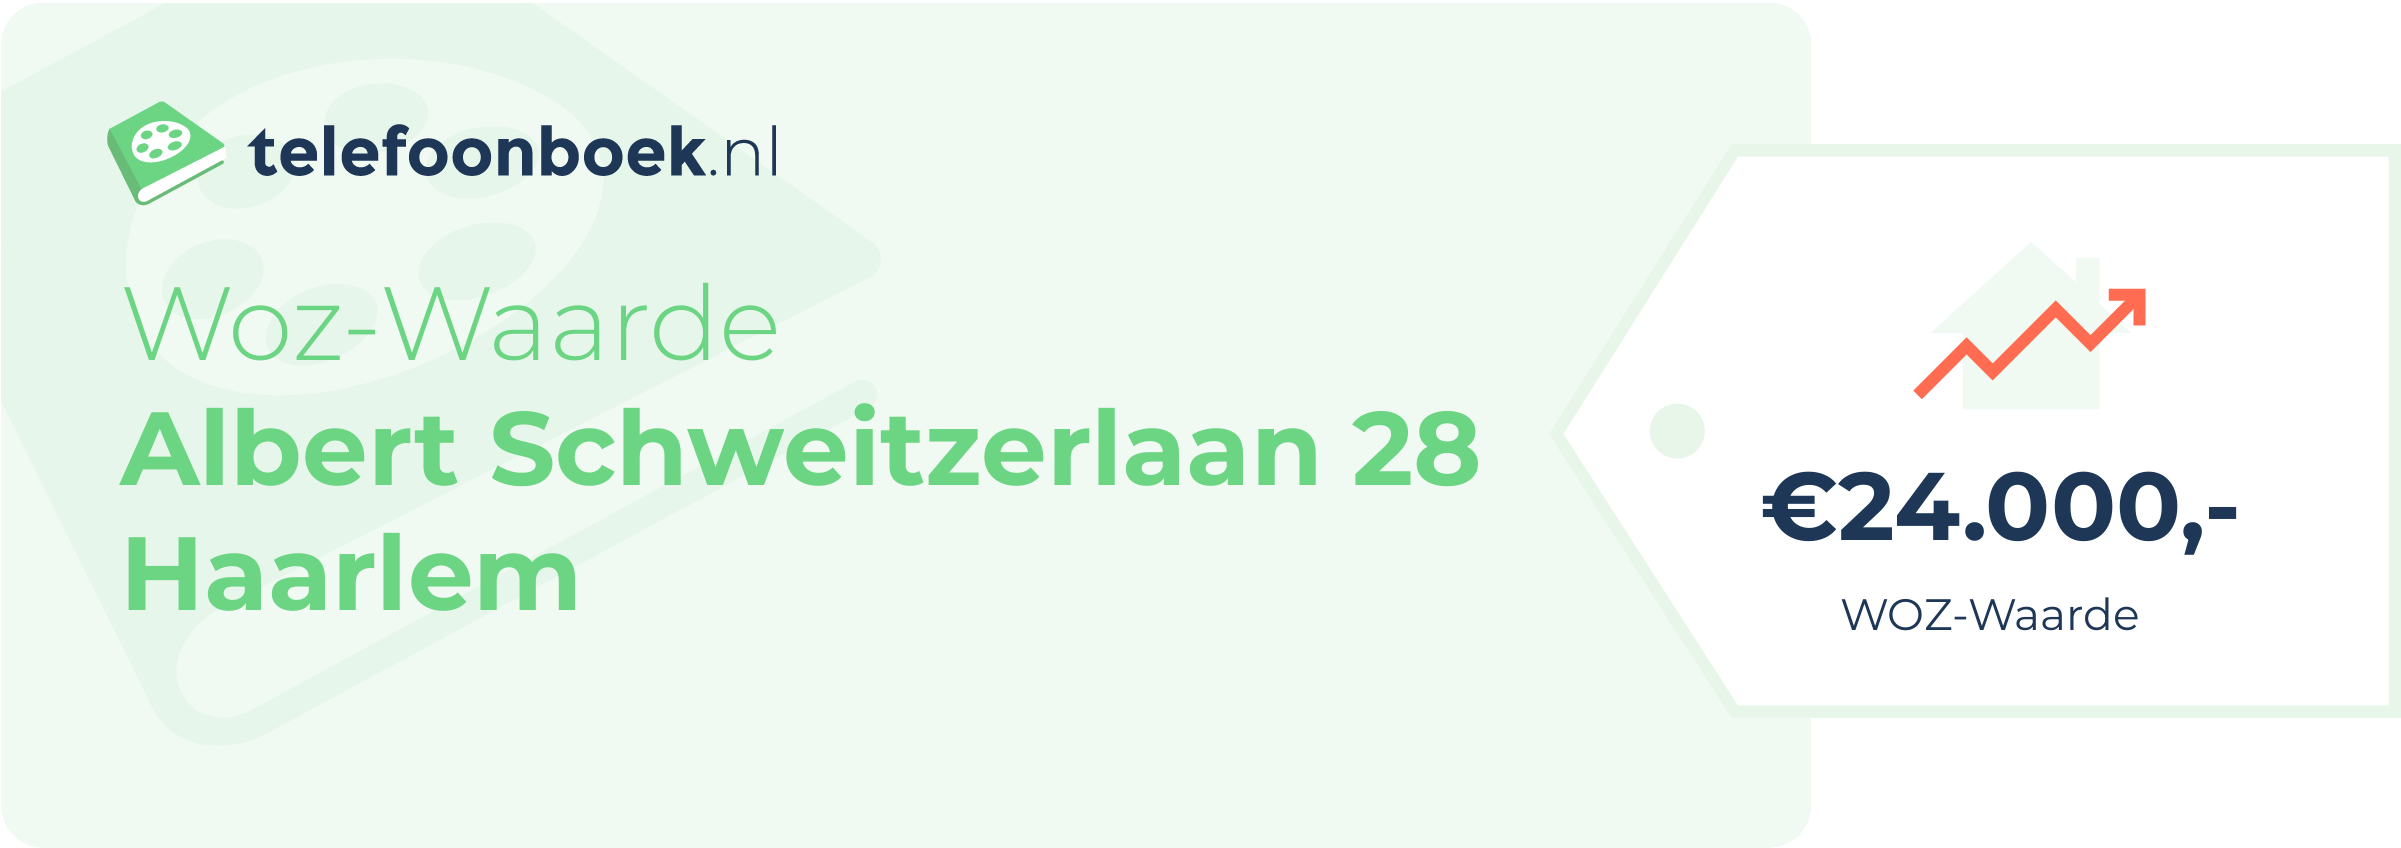 WOZ-waarde Albert Schweitzerlaan 28 Haarlem